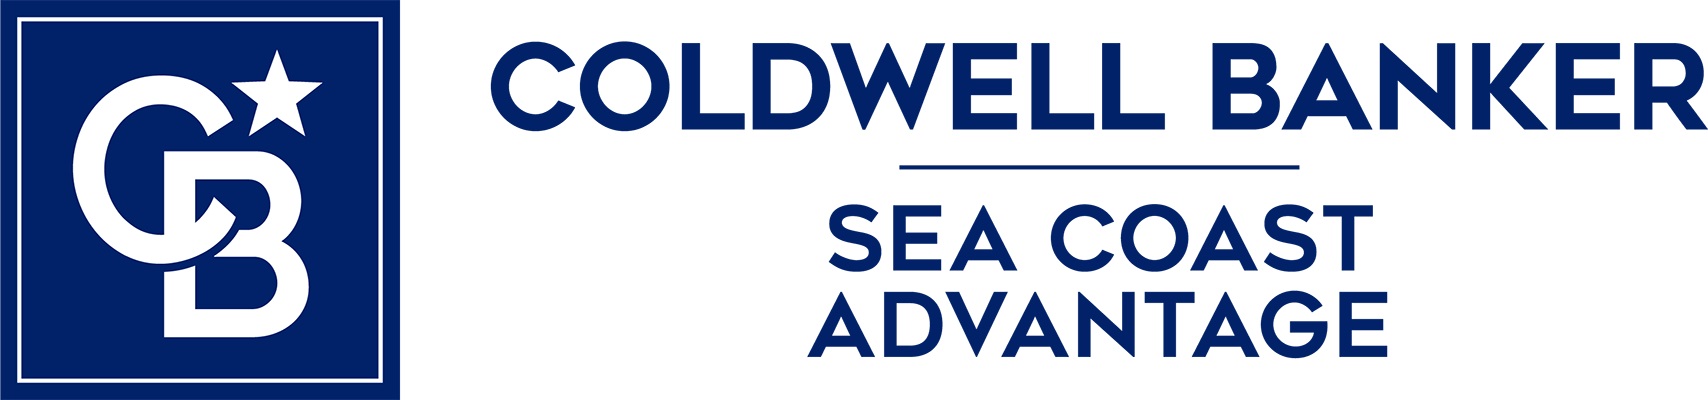 Ginger Harper Real Estate Group - Coldwell Banker Sea Coast Advantage Logo